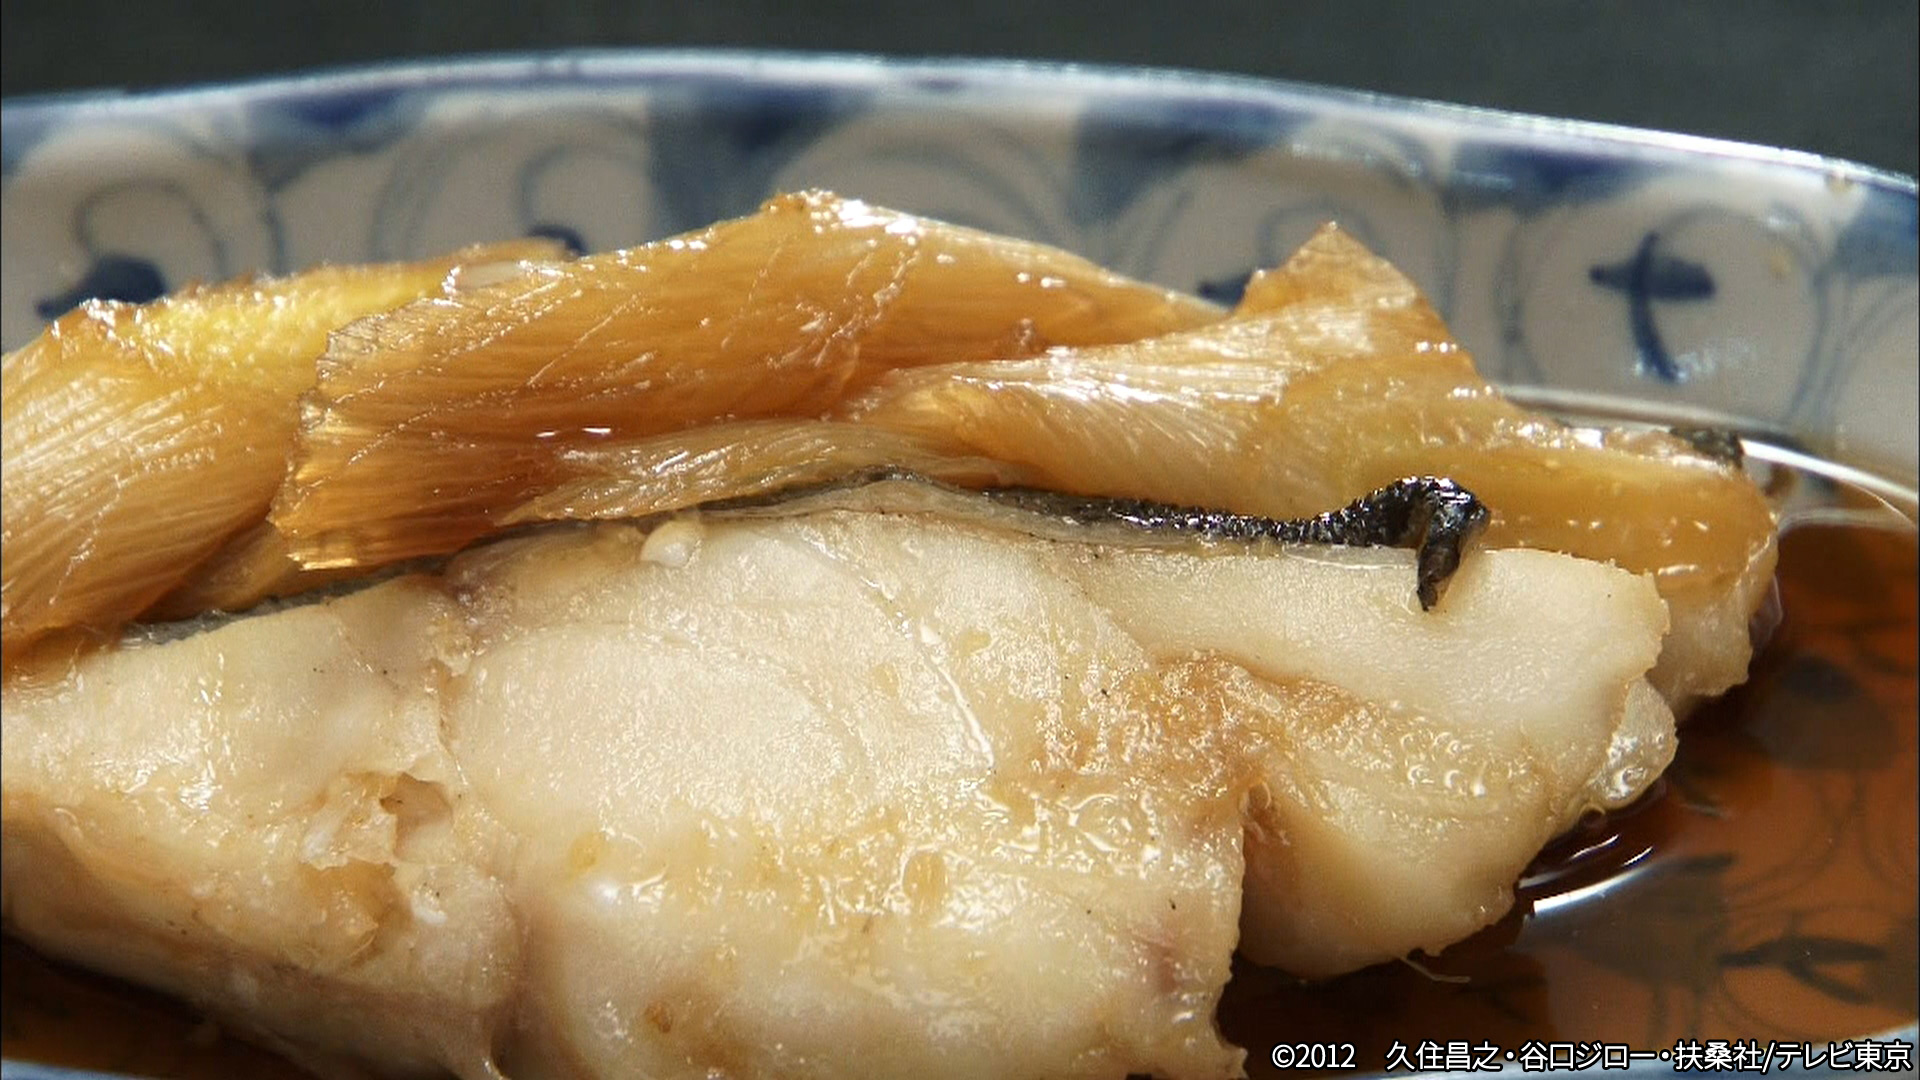 動画 第2話 豊島区駒込の煮魚定食 孤独のグルメ Season1 12年1月11日 水 ネットもテレ東